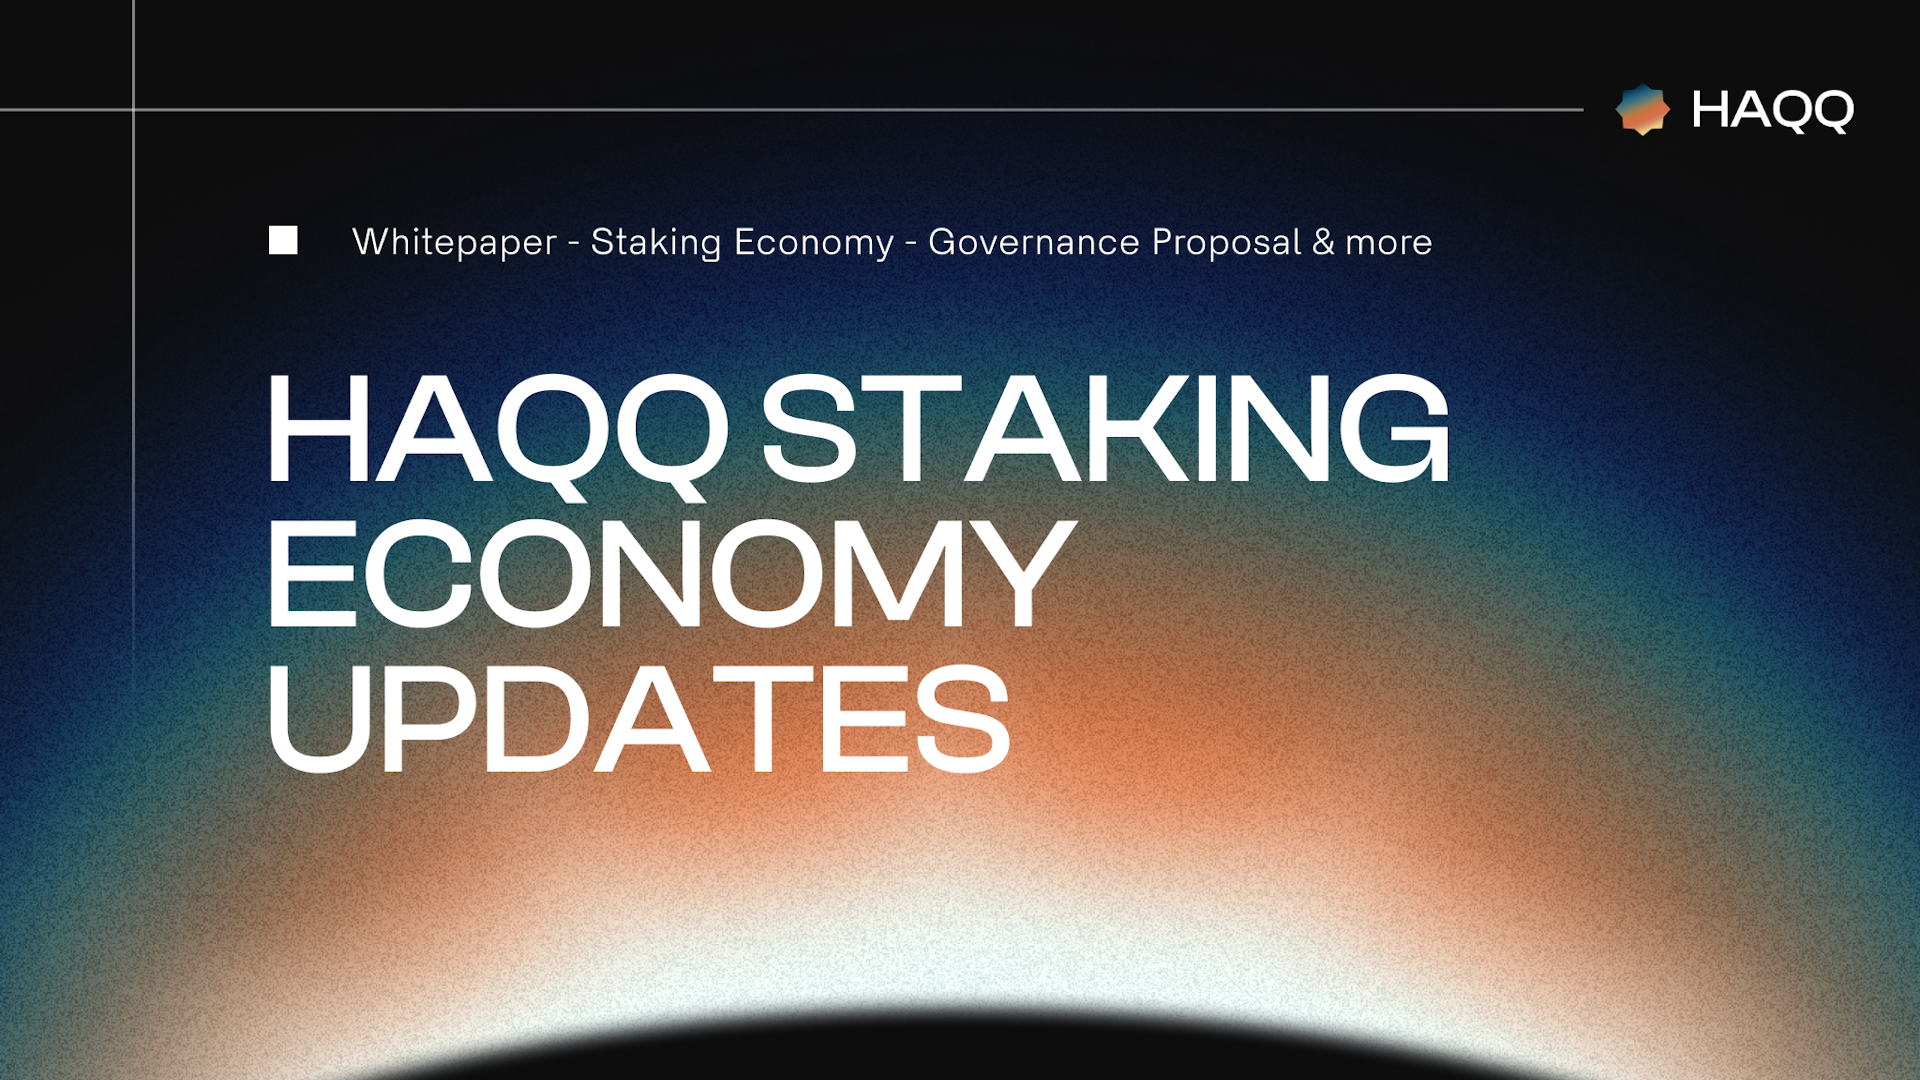 HAQQ Staking Economy Update 